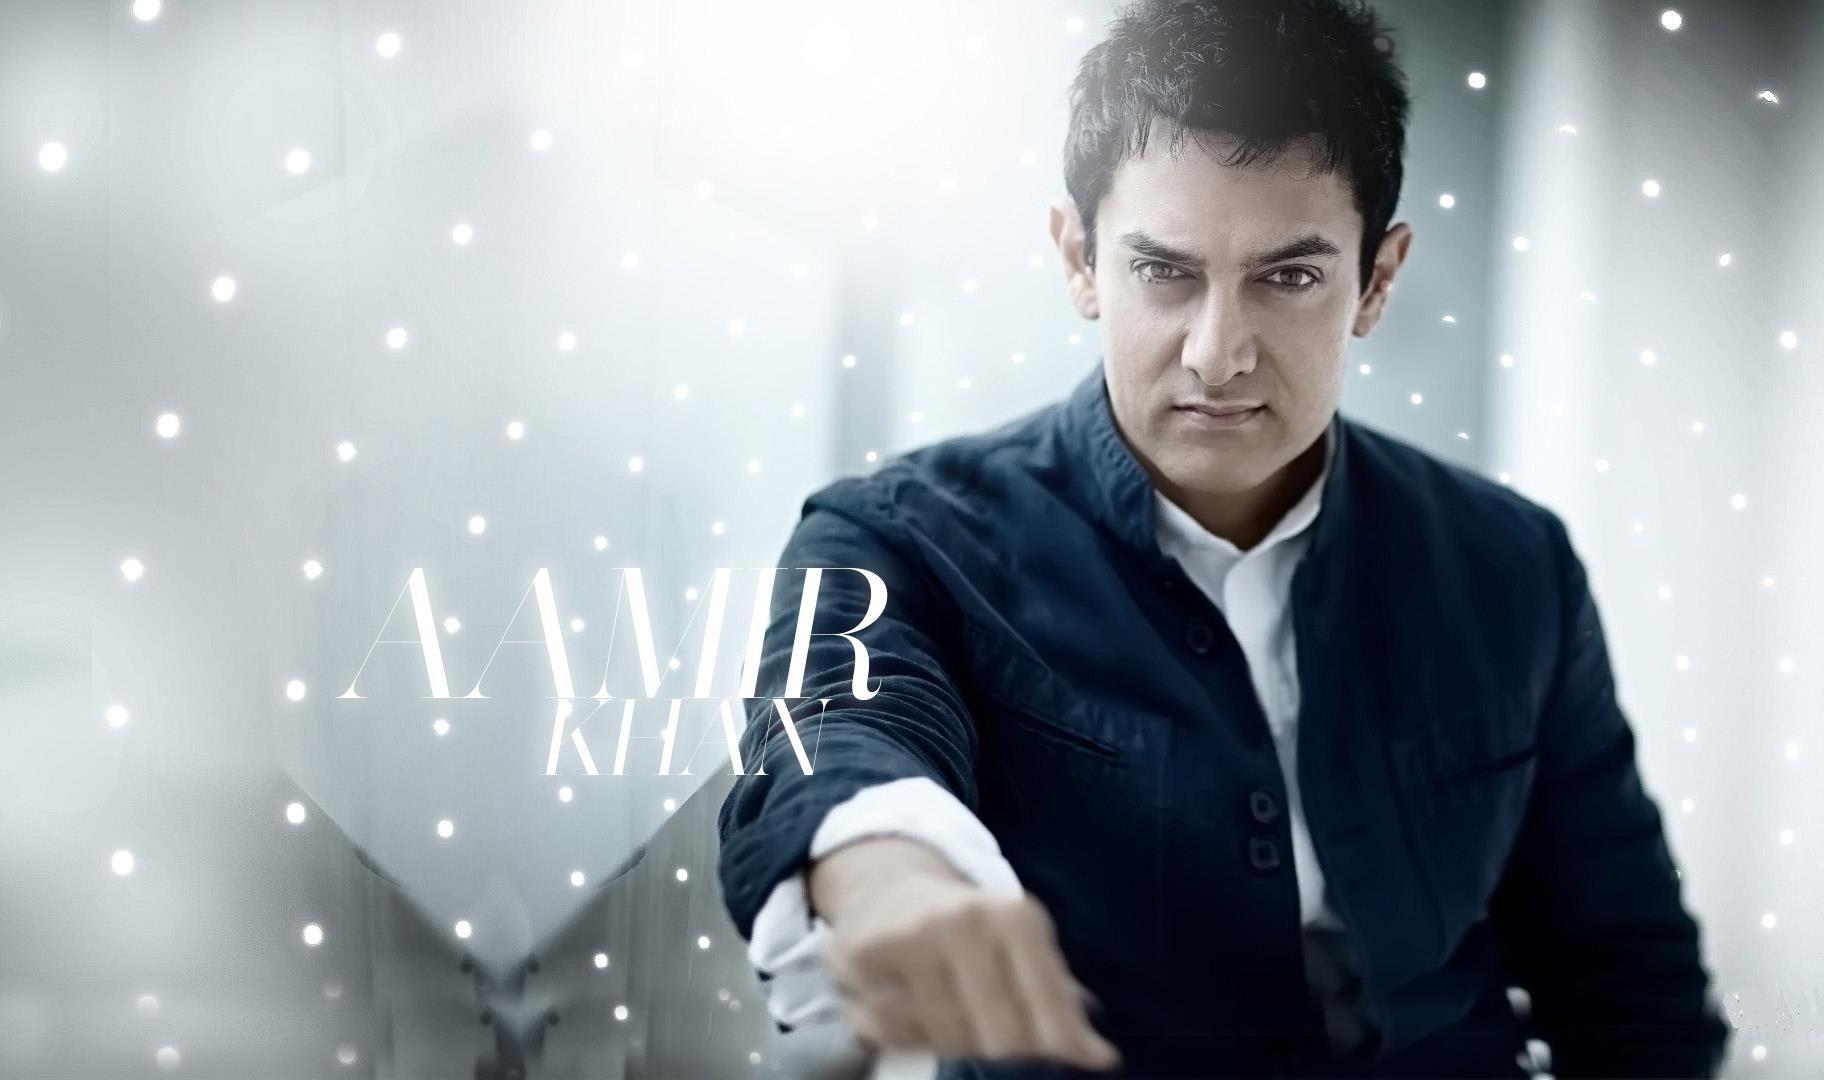 Aamir Khan Wallpapers - Top Free Aamir Khan Backgrounds - WallpaperAccess